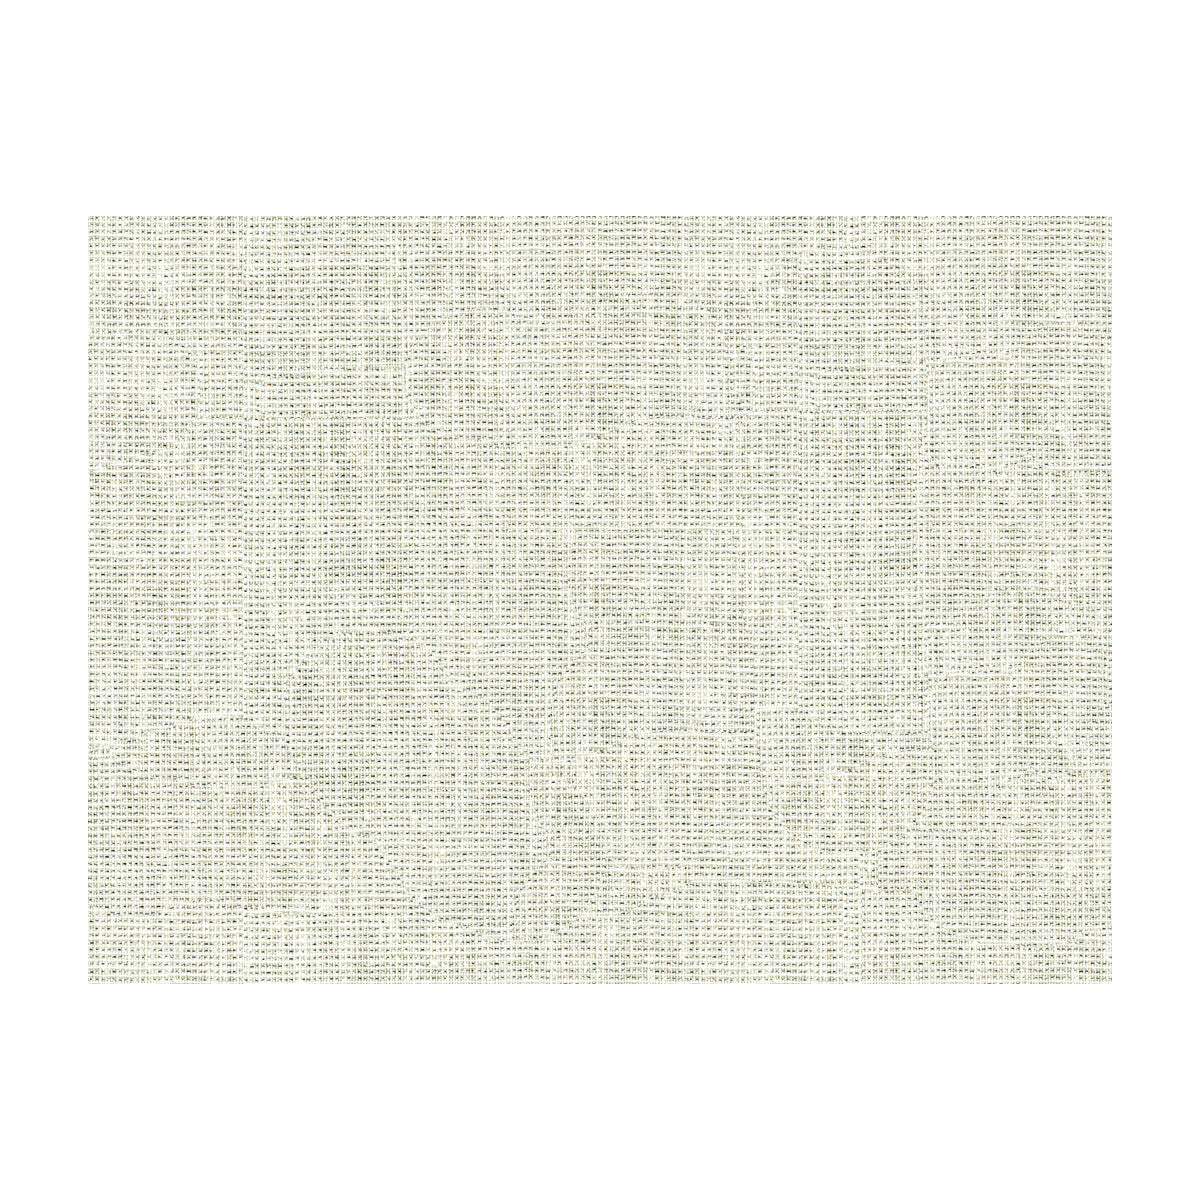 Kravet Basics fabric in 3922-11 color - pattern 3922.11.0 - by Kravet Basics